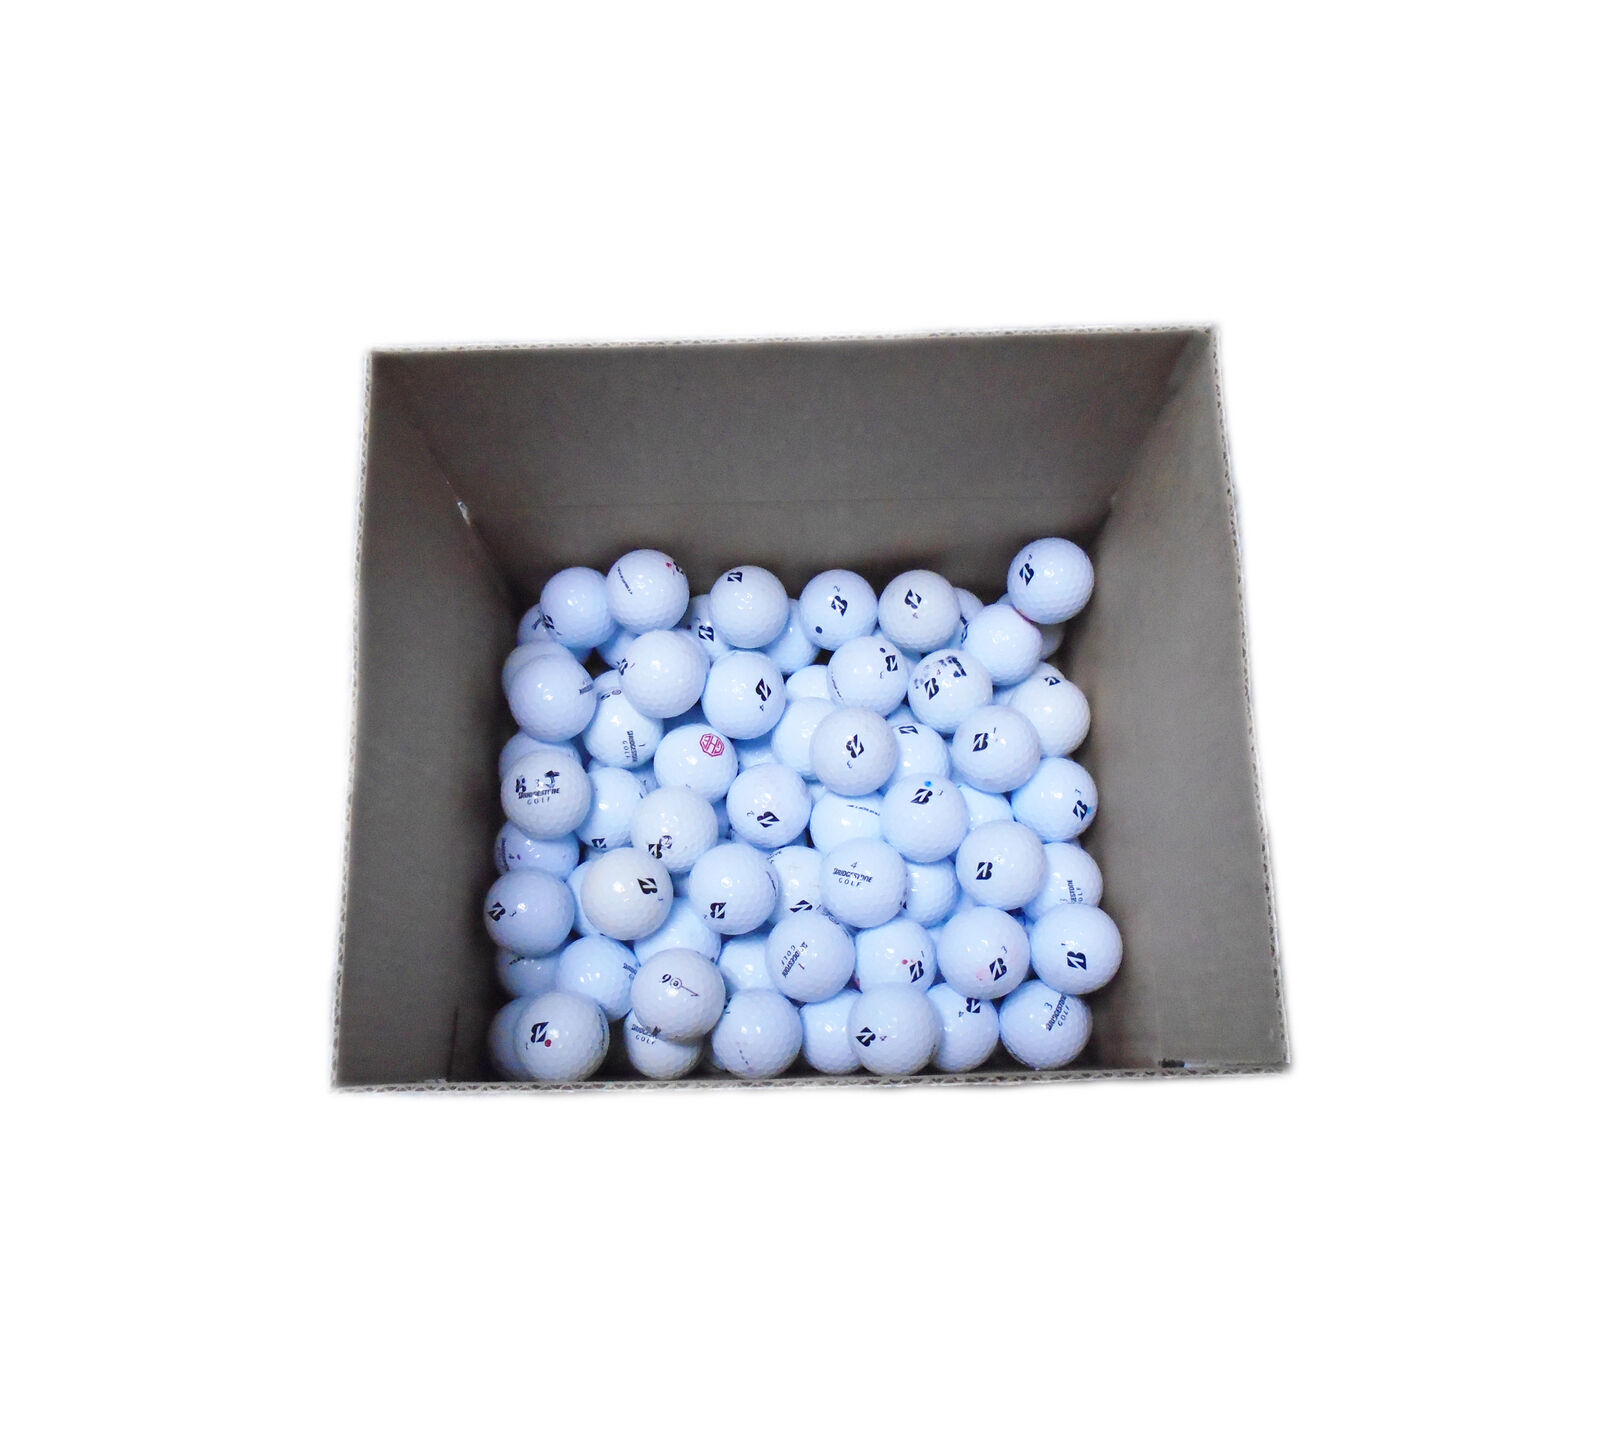 100 White Bridgestone Good Condition Golf Balls - Tour B/e6/e7/e12/B330